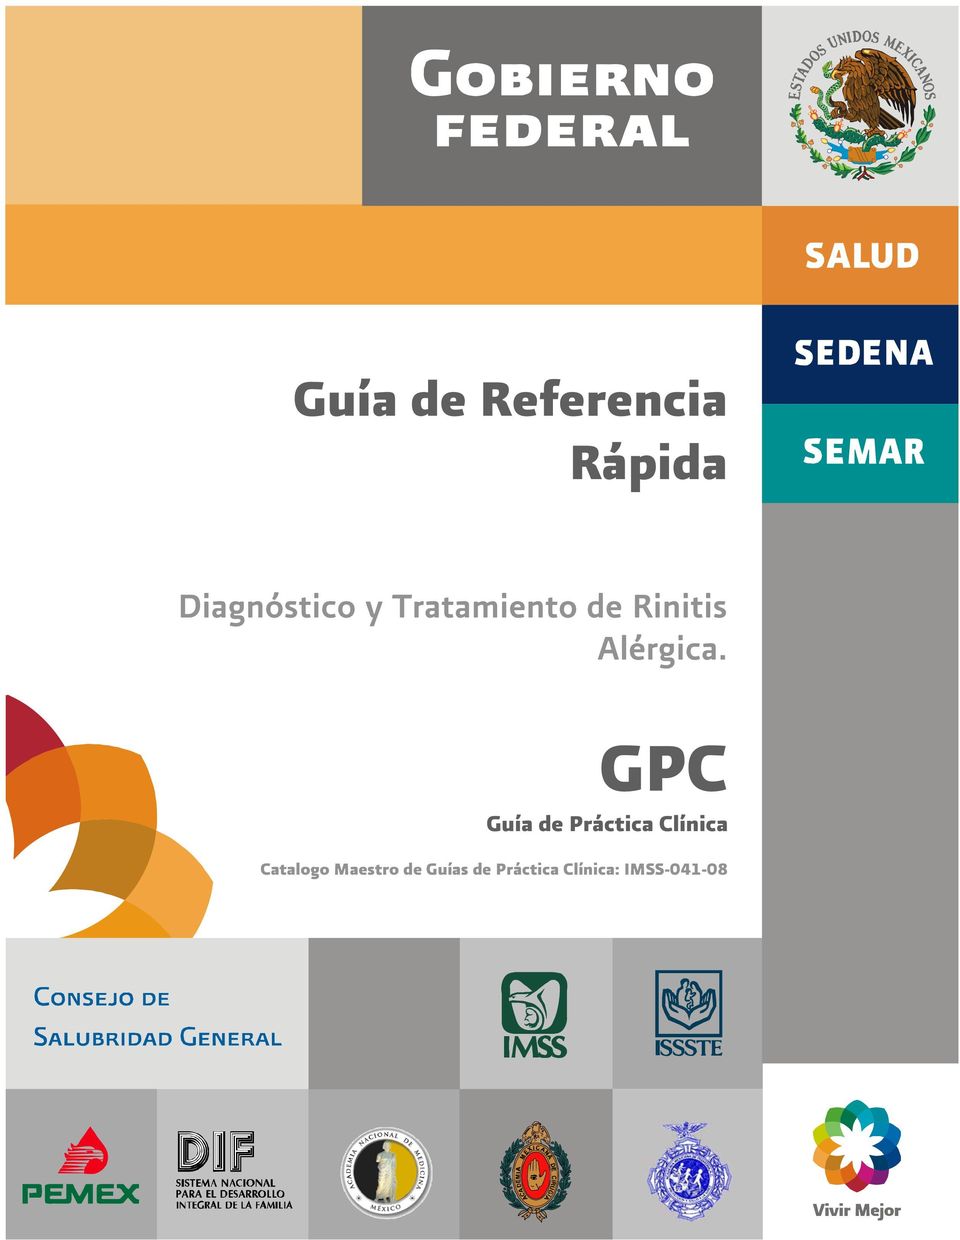 GPC Guía de Práctica Clínica Catalogo